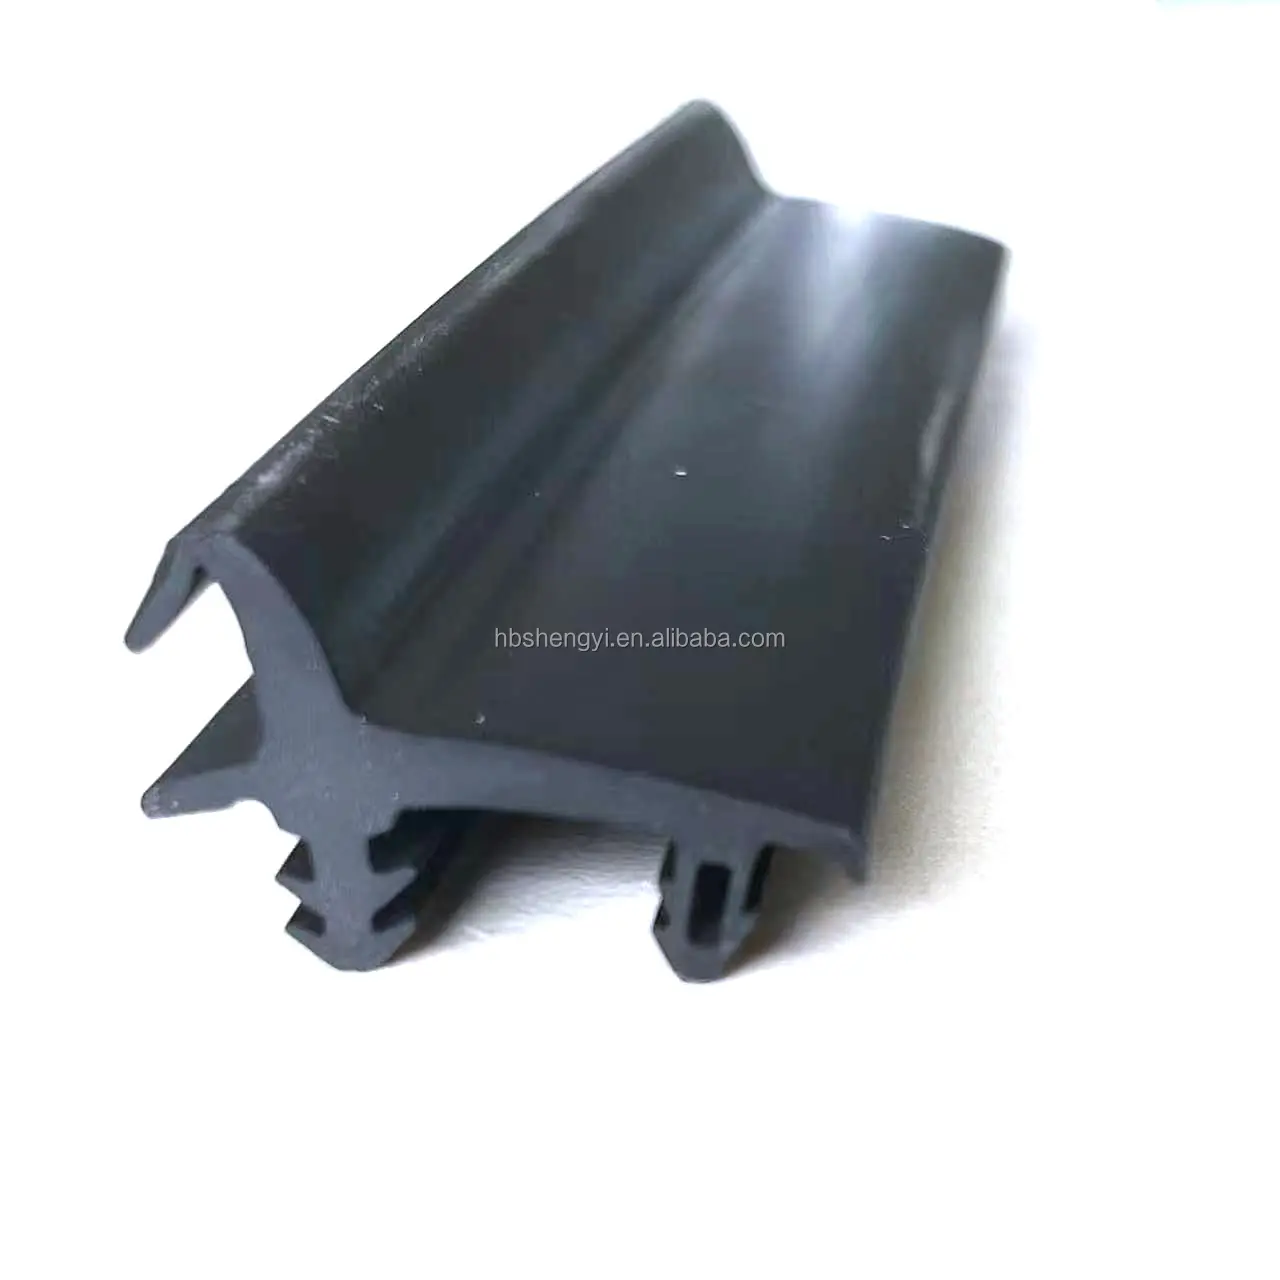 Perfil de extrusión de caucho OEM personalizado moldeado por extrusión de silicona/EPDM/PVC tiras de sellado de caucho